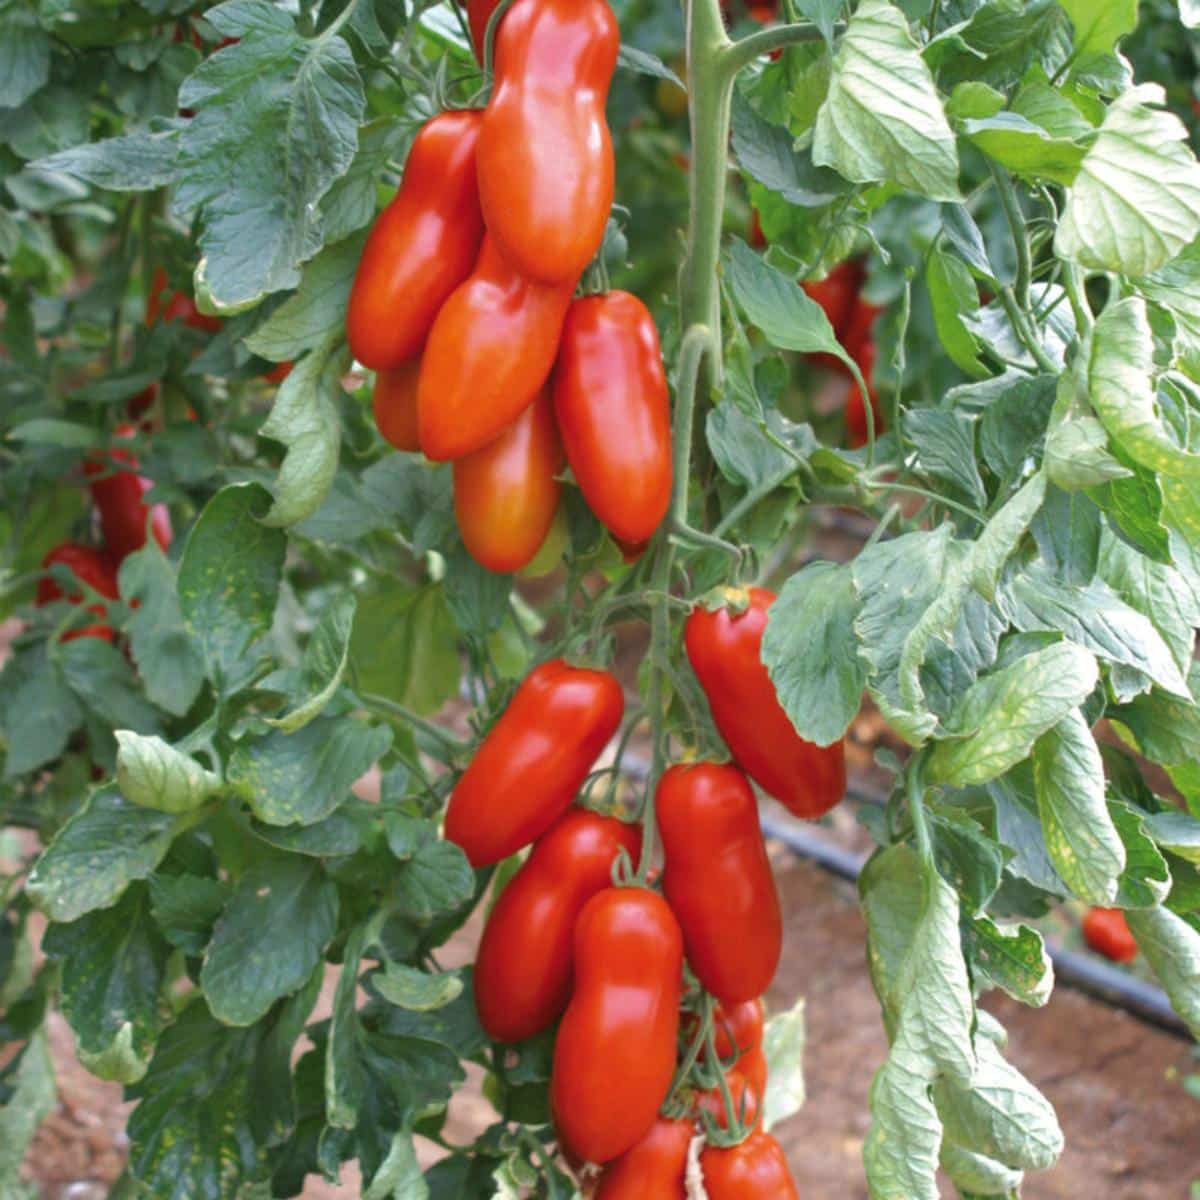 Pozzano tomatoes